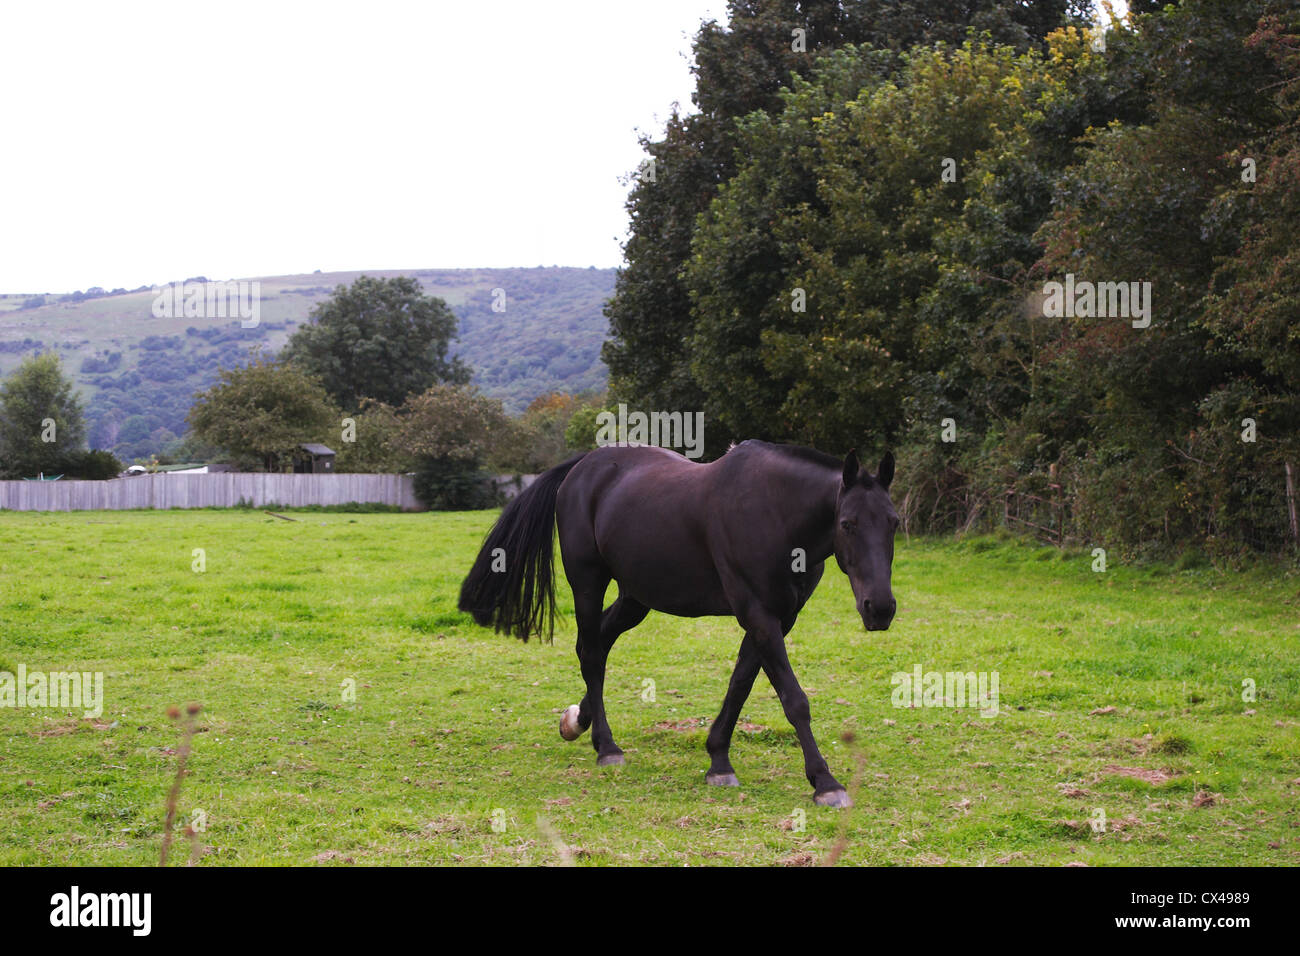 Black mare grazing in a field Stock Photo